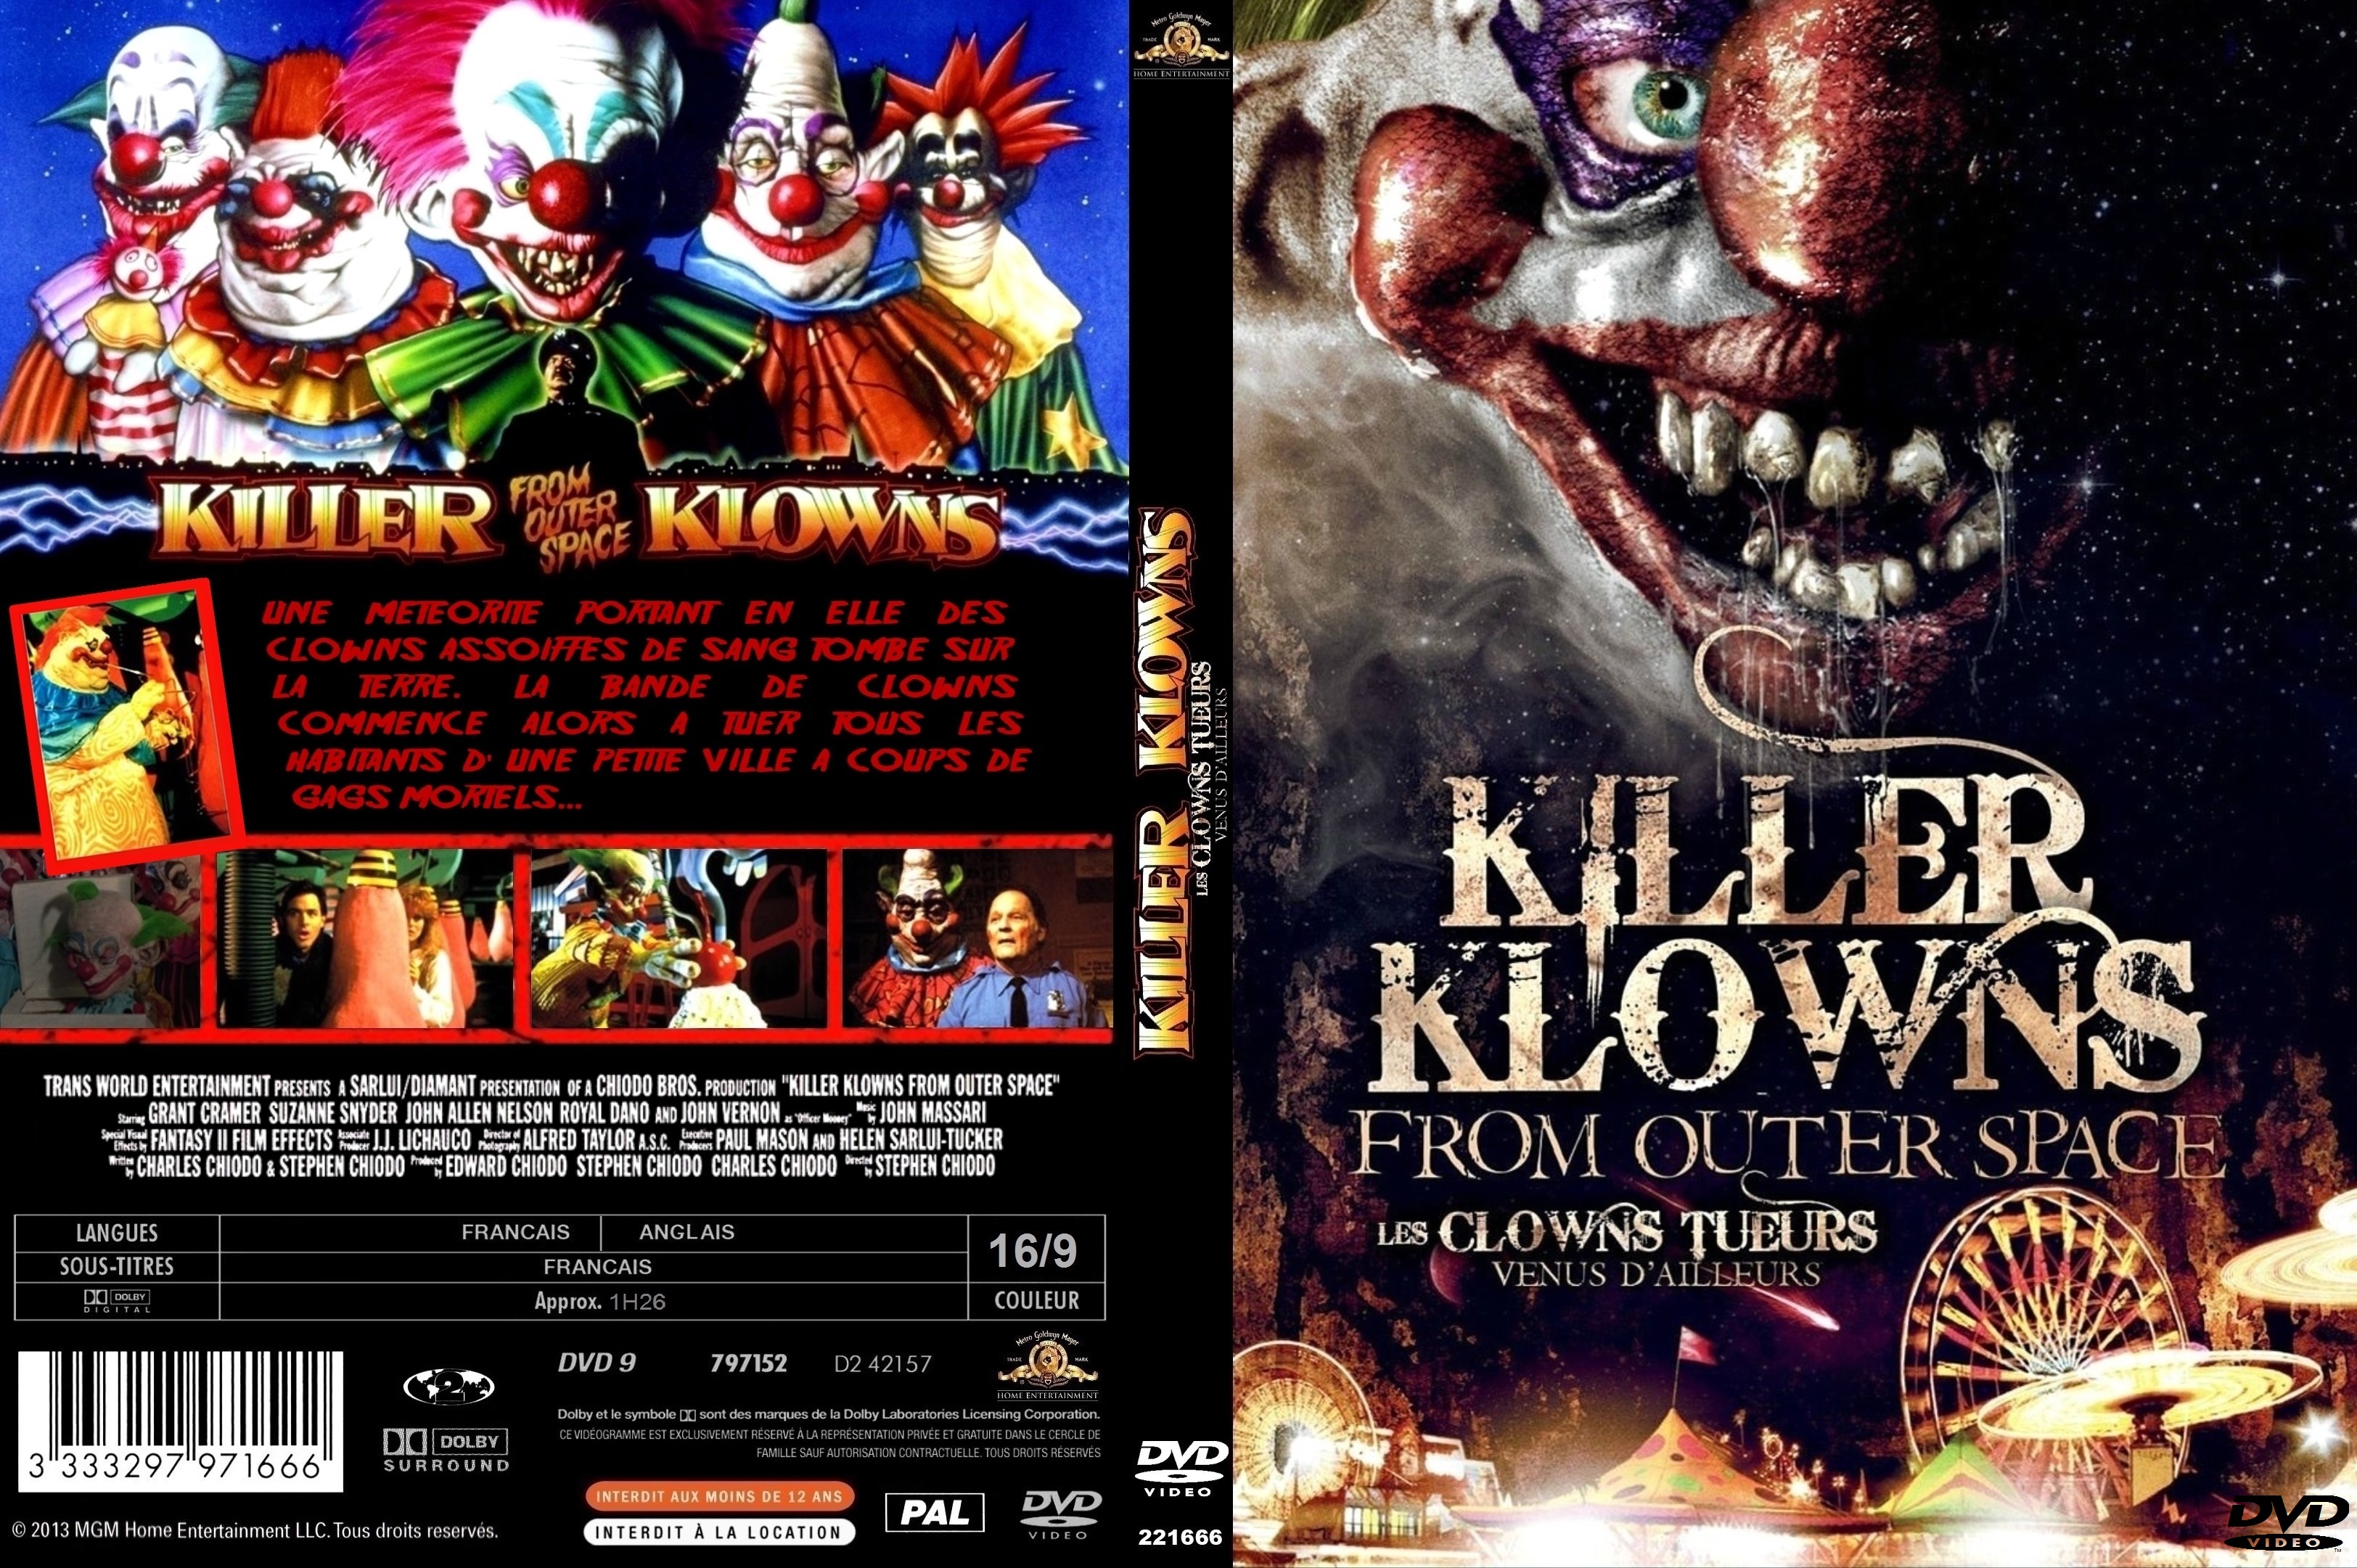 Jaquette DVD Les clowns tueurs venus d